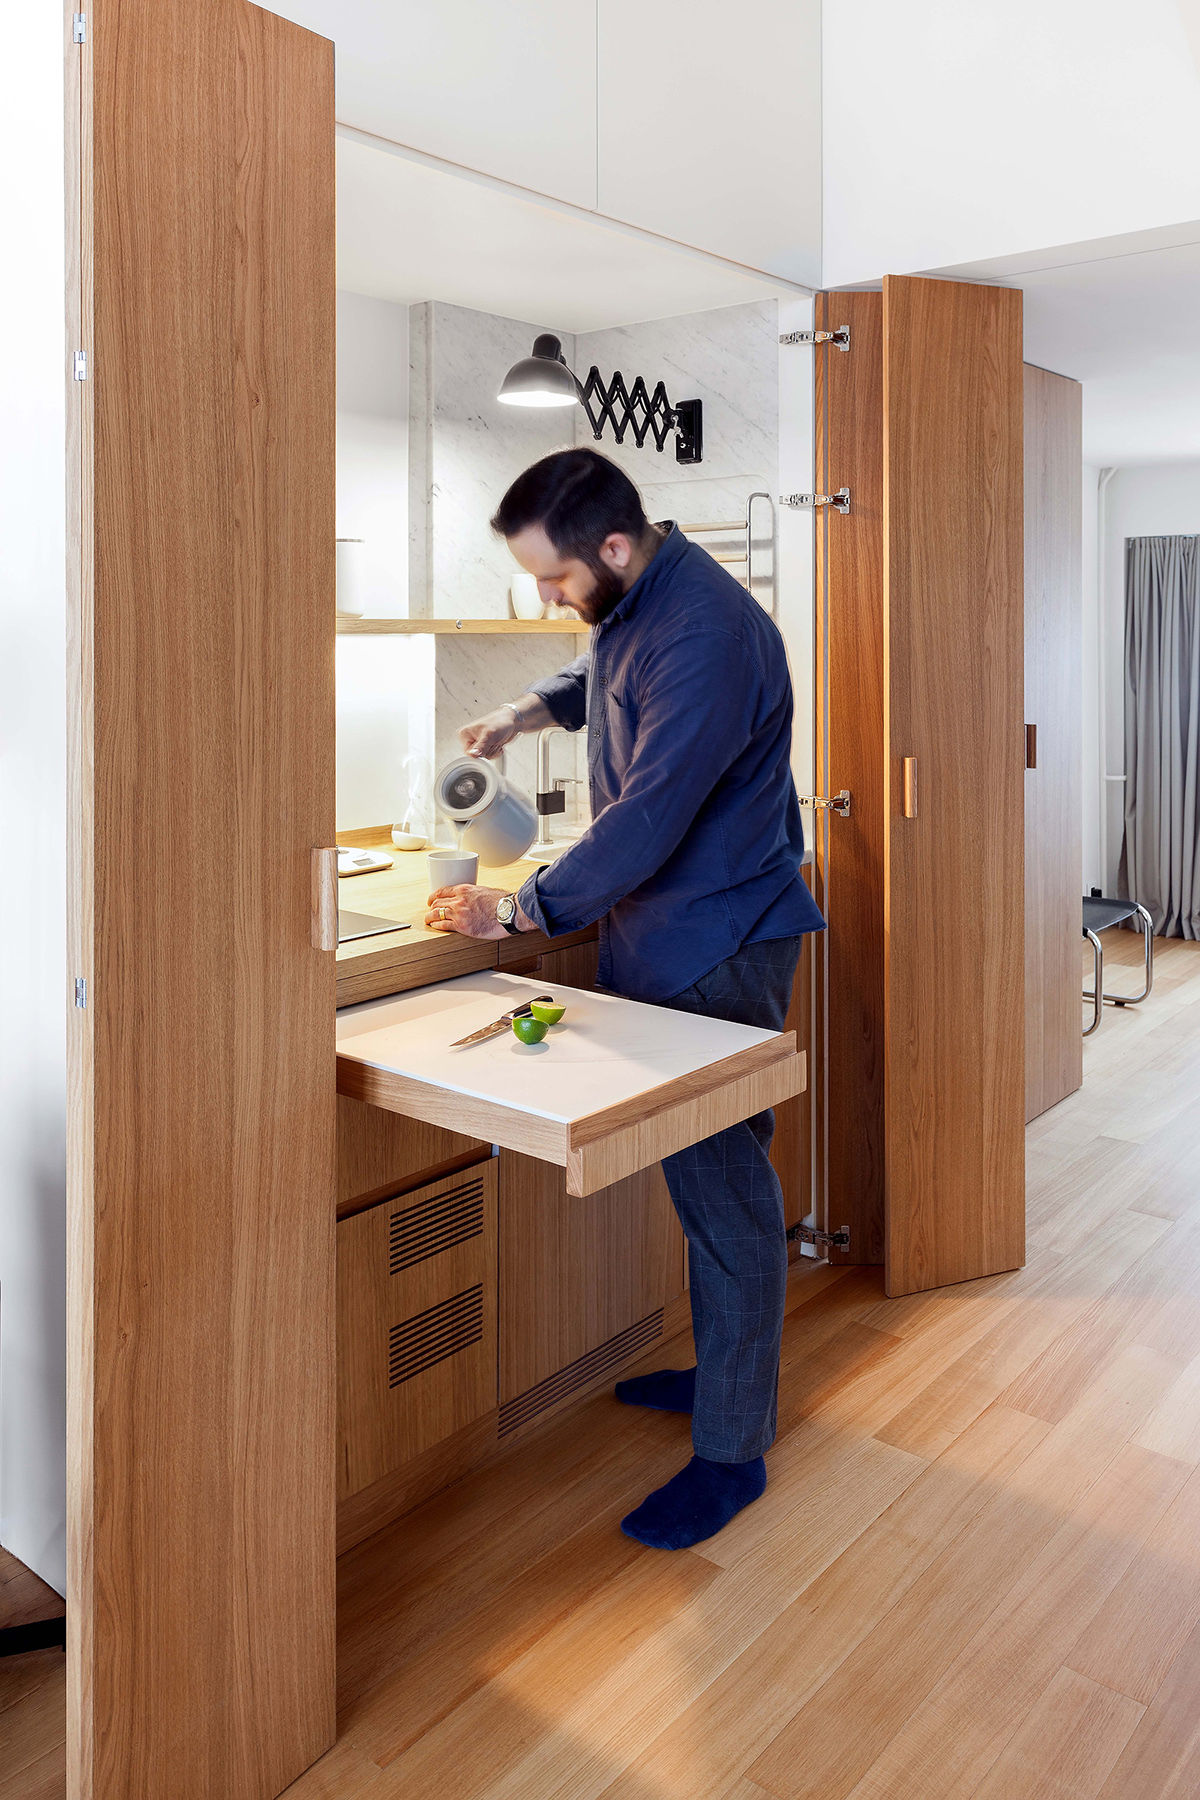 Với thiết kế thông minh, khoa học, sự tính toán phân chia kỹ lưỡng cho từng khu vực chức năng đã tạo nên một phòng bếp hoàn hảo đáp ứng nhu cầu của anh chàng độc thân, đồng thời tiết kiệm diện tích tối đa cho căn hộ nhỏ. 